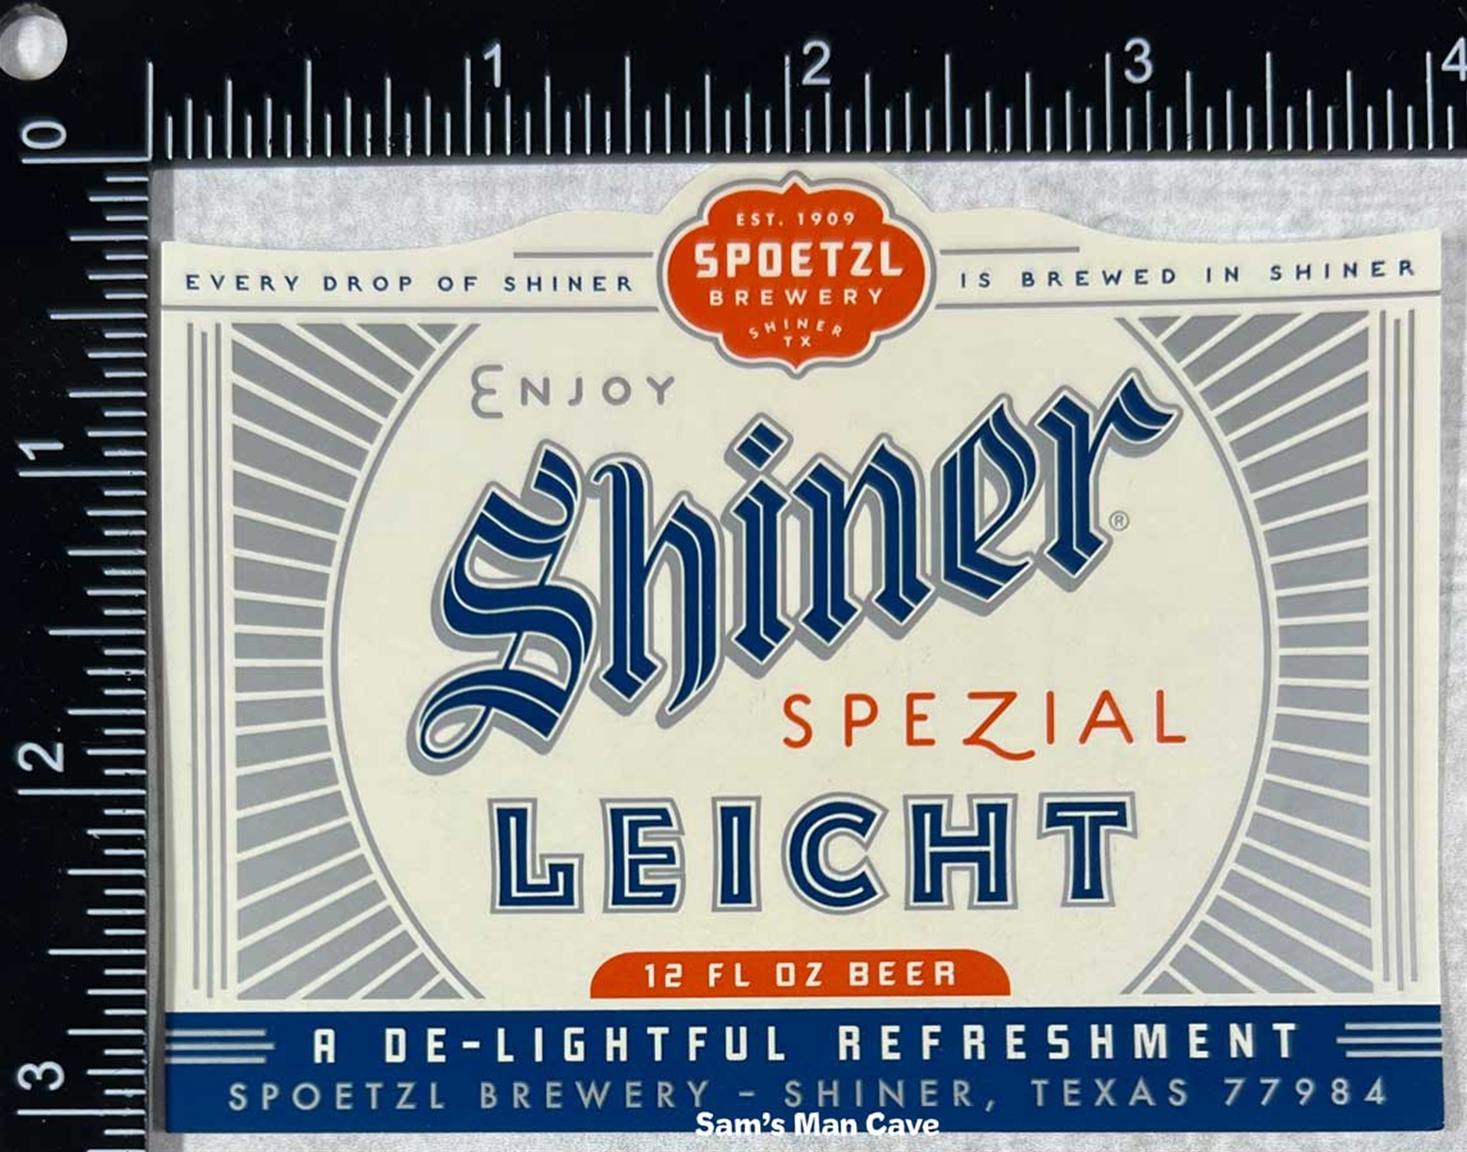 Shiner Spezial Leicht Beer Label